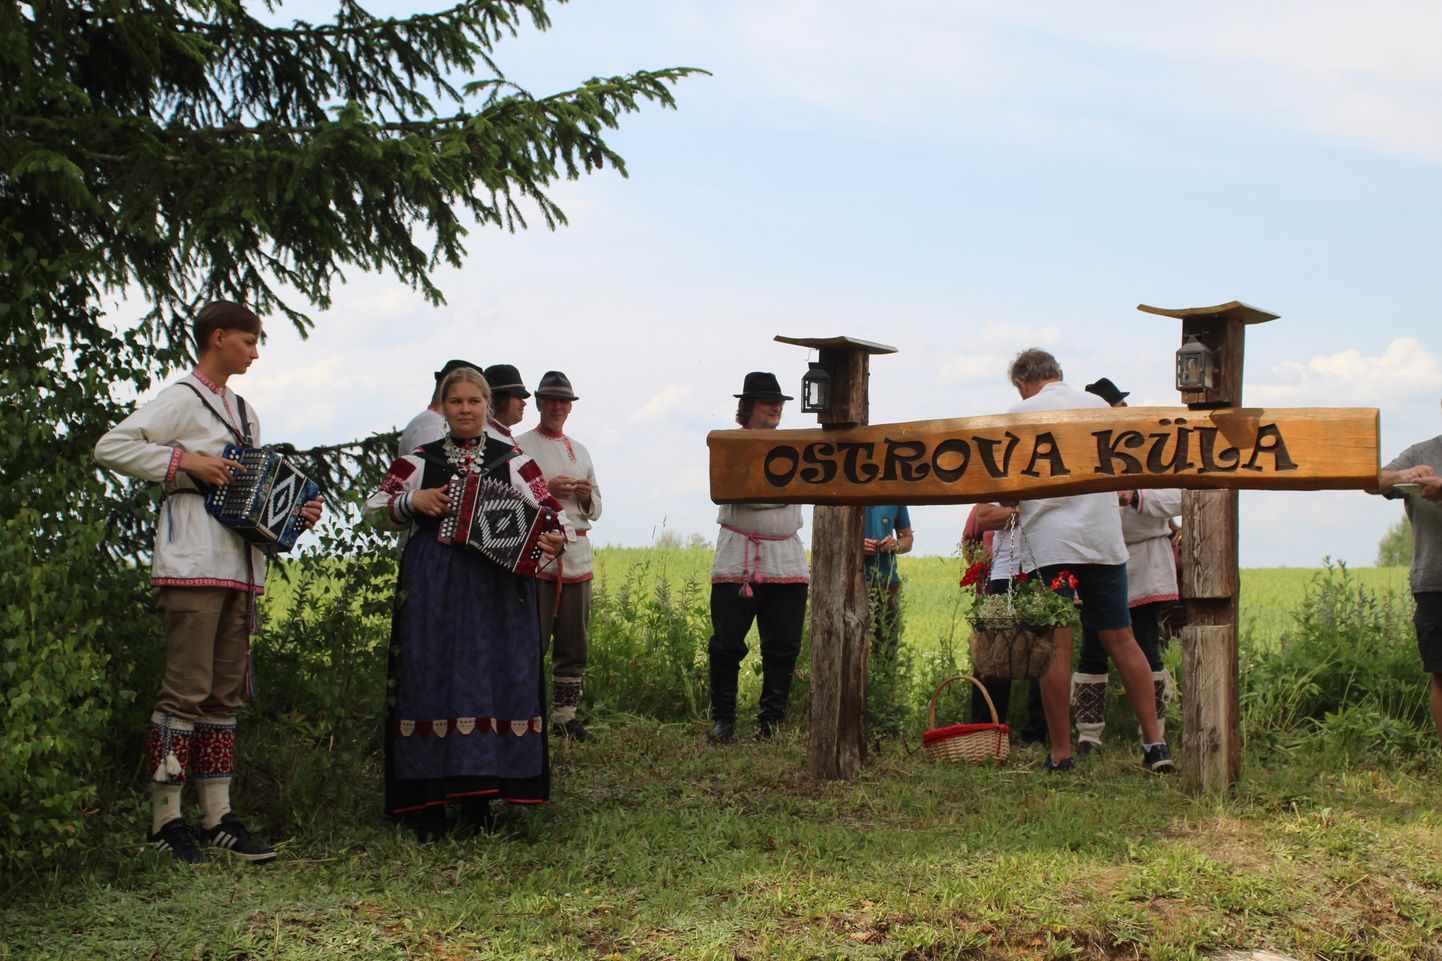 Ostrova küla võõrustas aasta küla 2023 konkursi komisjoni eelmisel kuul.